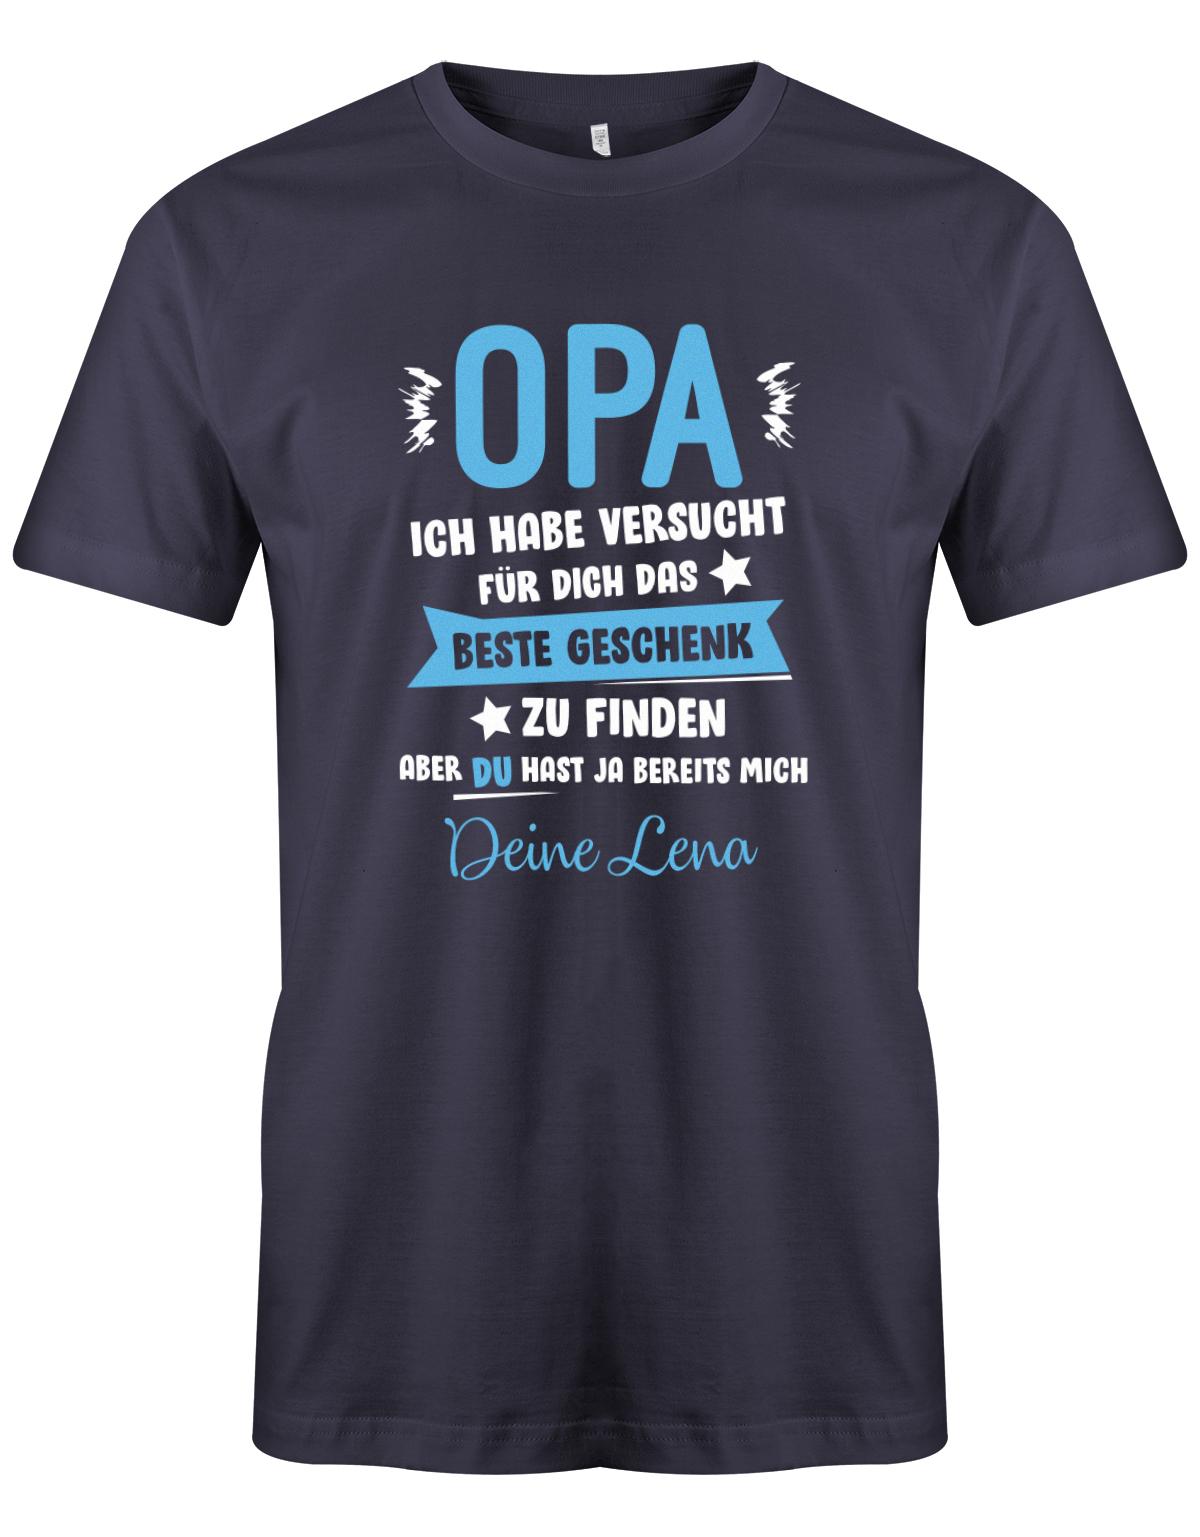 Opa Shirt personalisiert - Opa ich habe versucht, das beste Geschenk für dich zu finden, aber du hast ja bereits mich. Name vom Enkel.  Navy